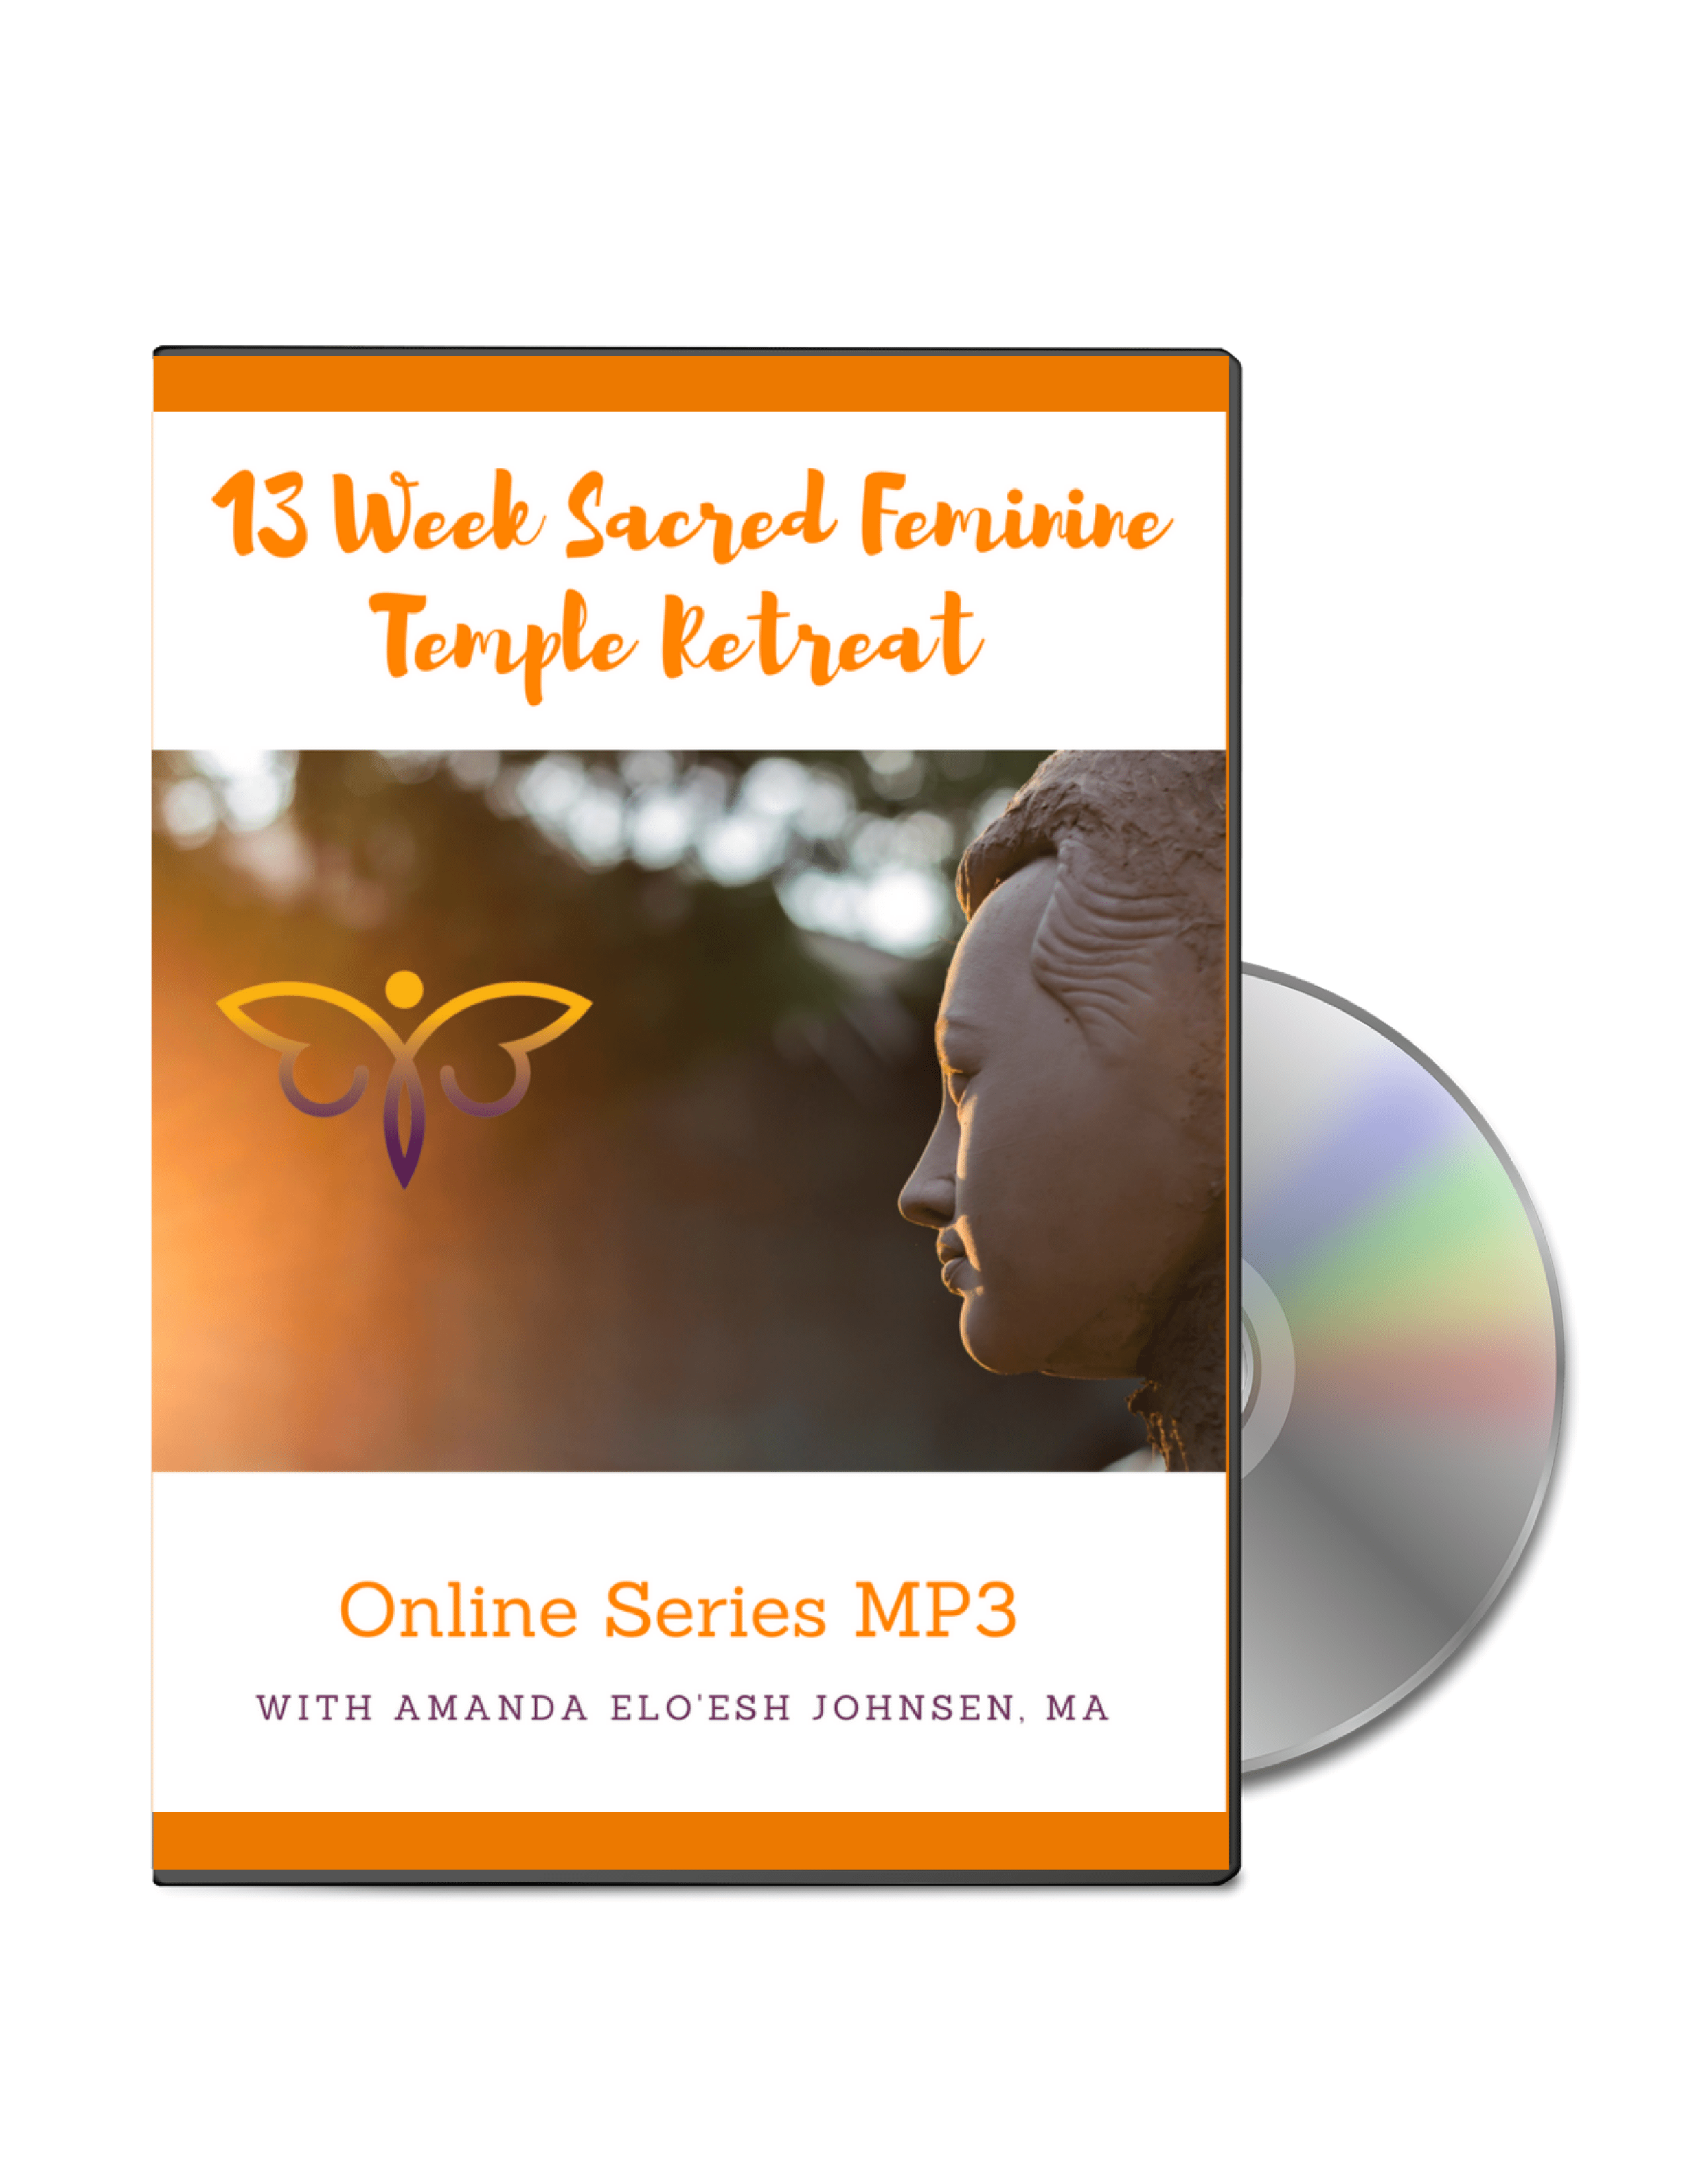 13 Week Sacred Feminine Temple Retreat Online Series MP3